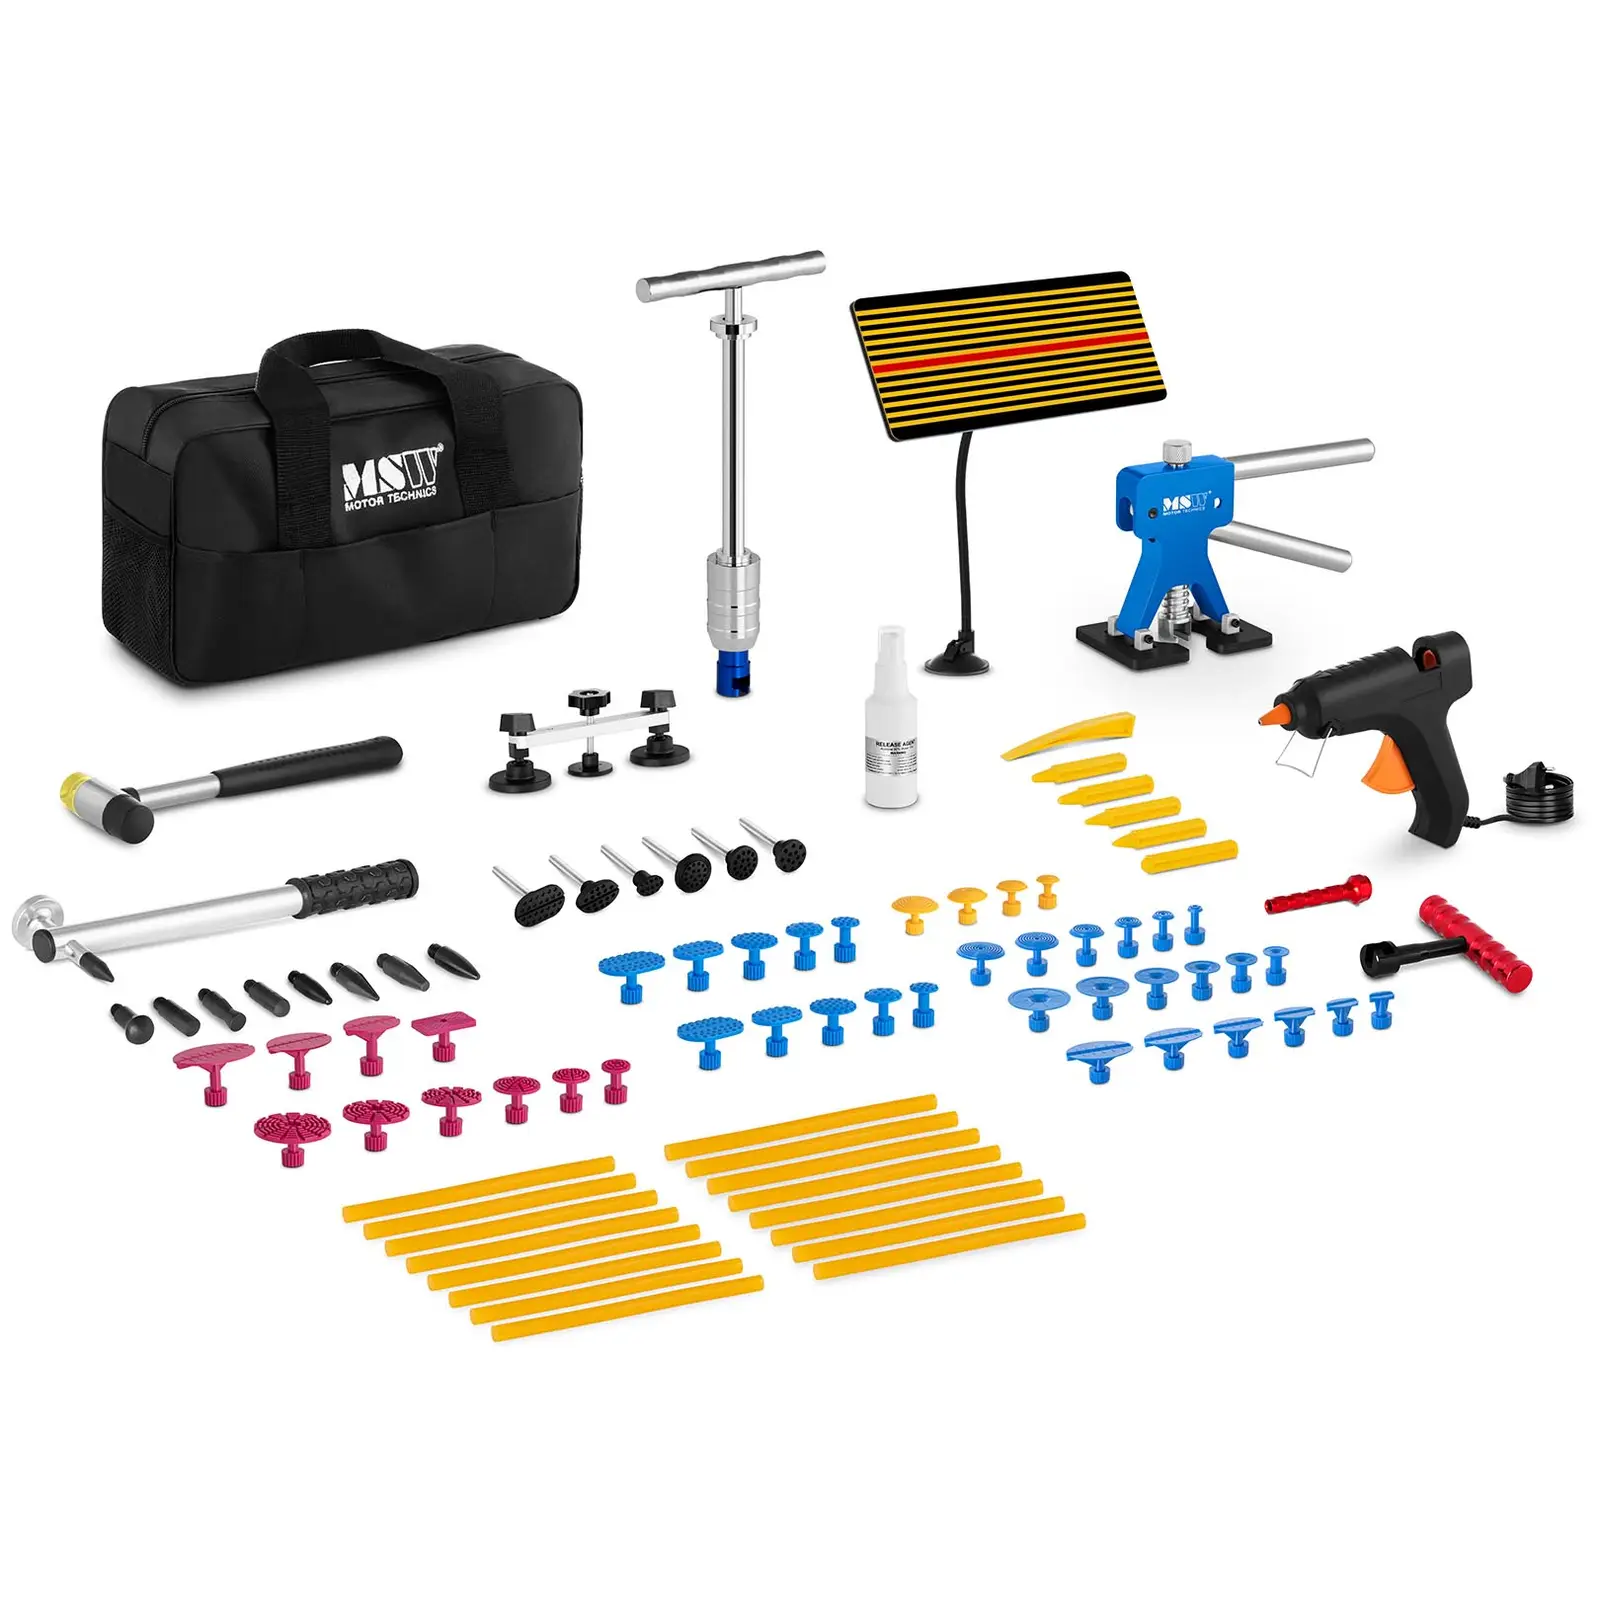 Kit de herramientas para reparar abolladuras - 90 piezas